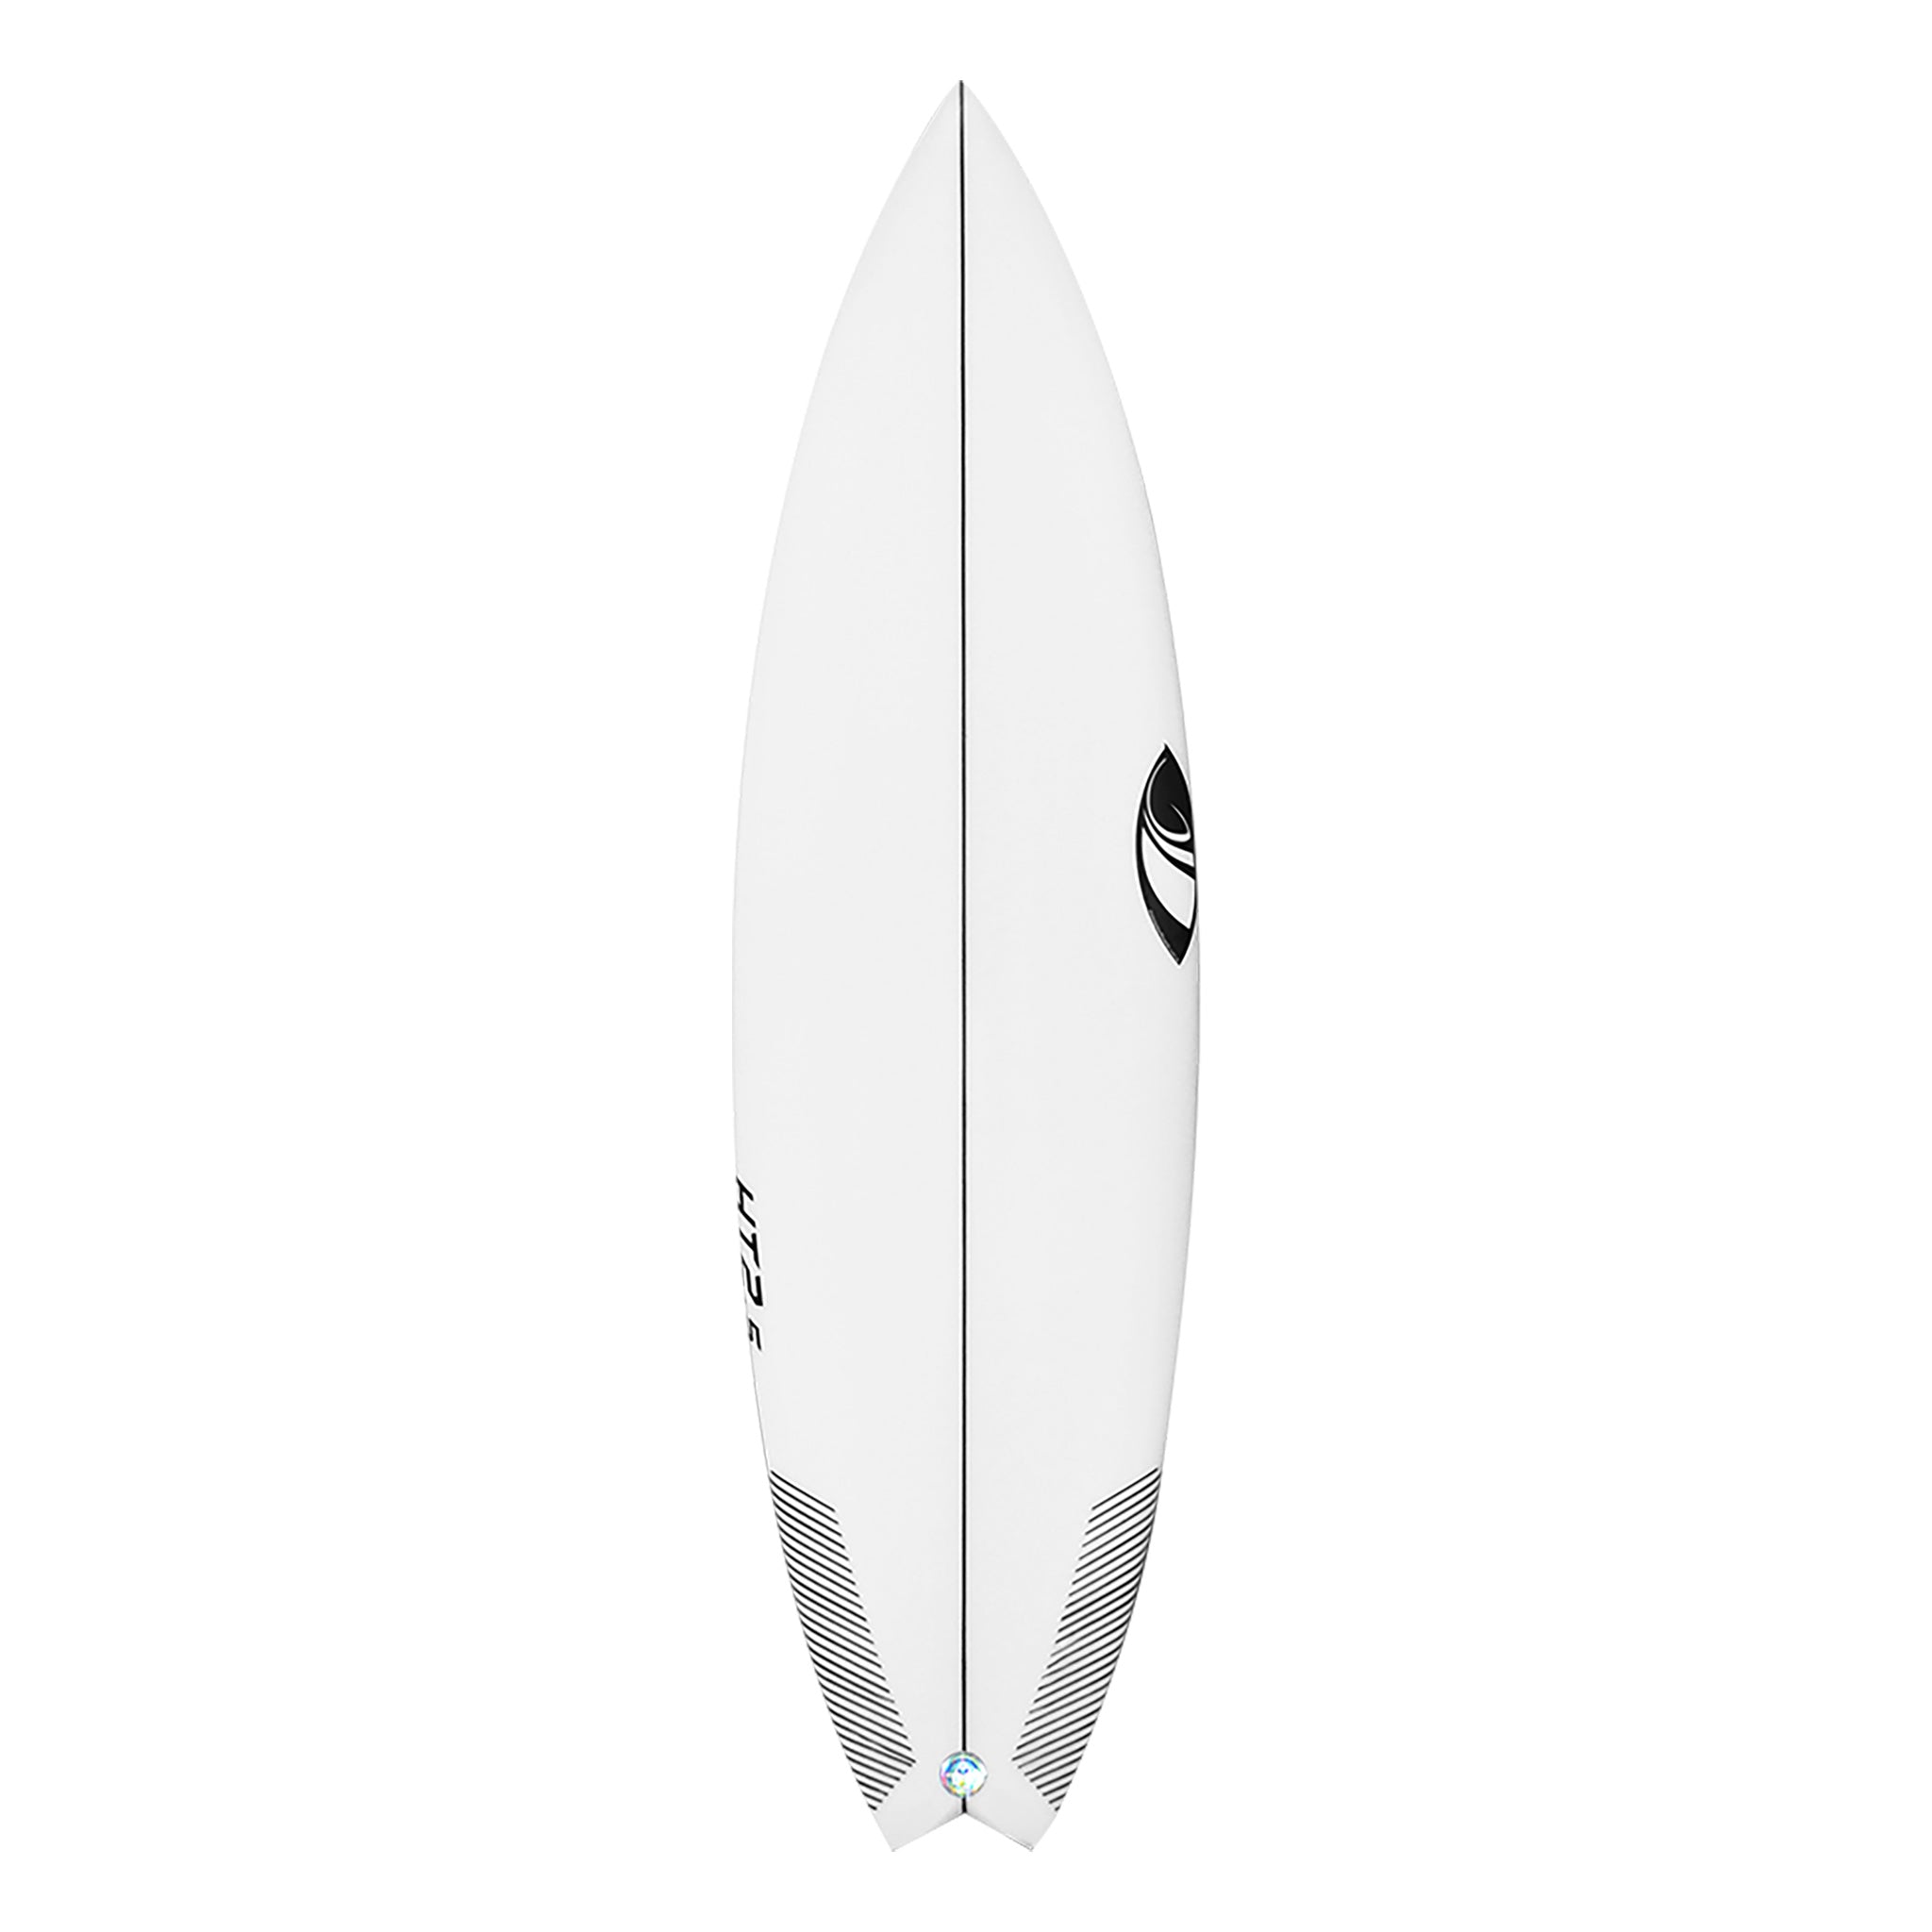 Sharpeye Surfboard Ht2.5